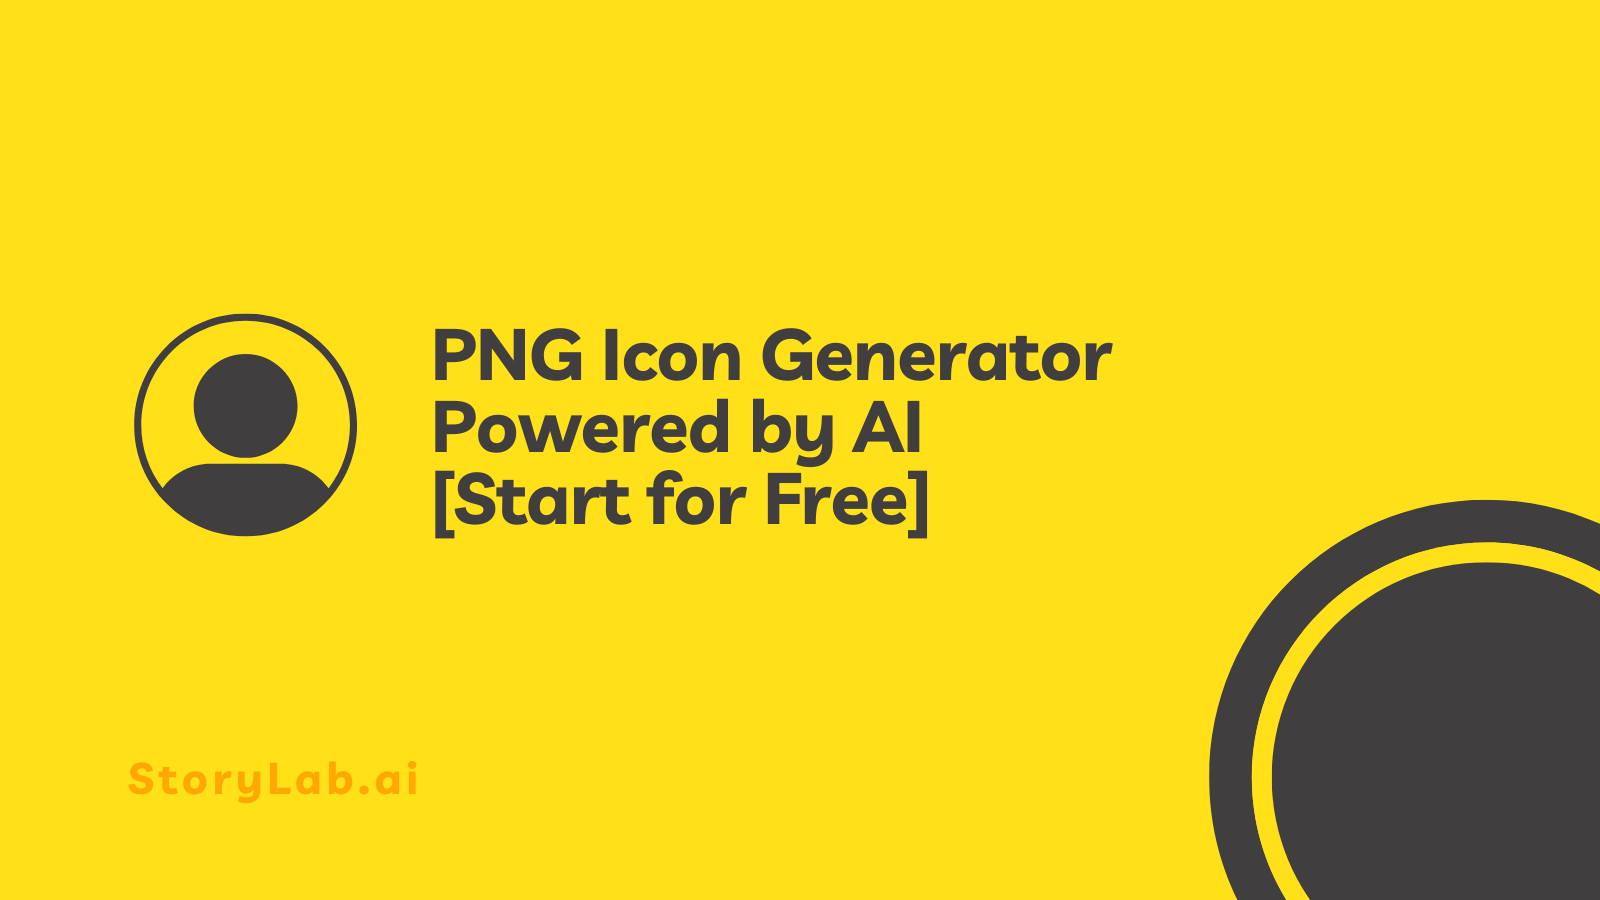 Gerador de ícones PNG - desenvolvido com IA [Iniciar gratuitamente]